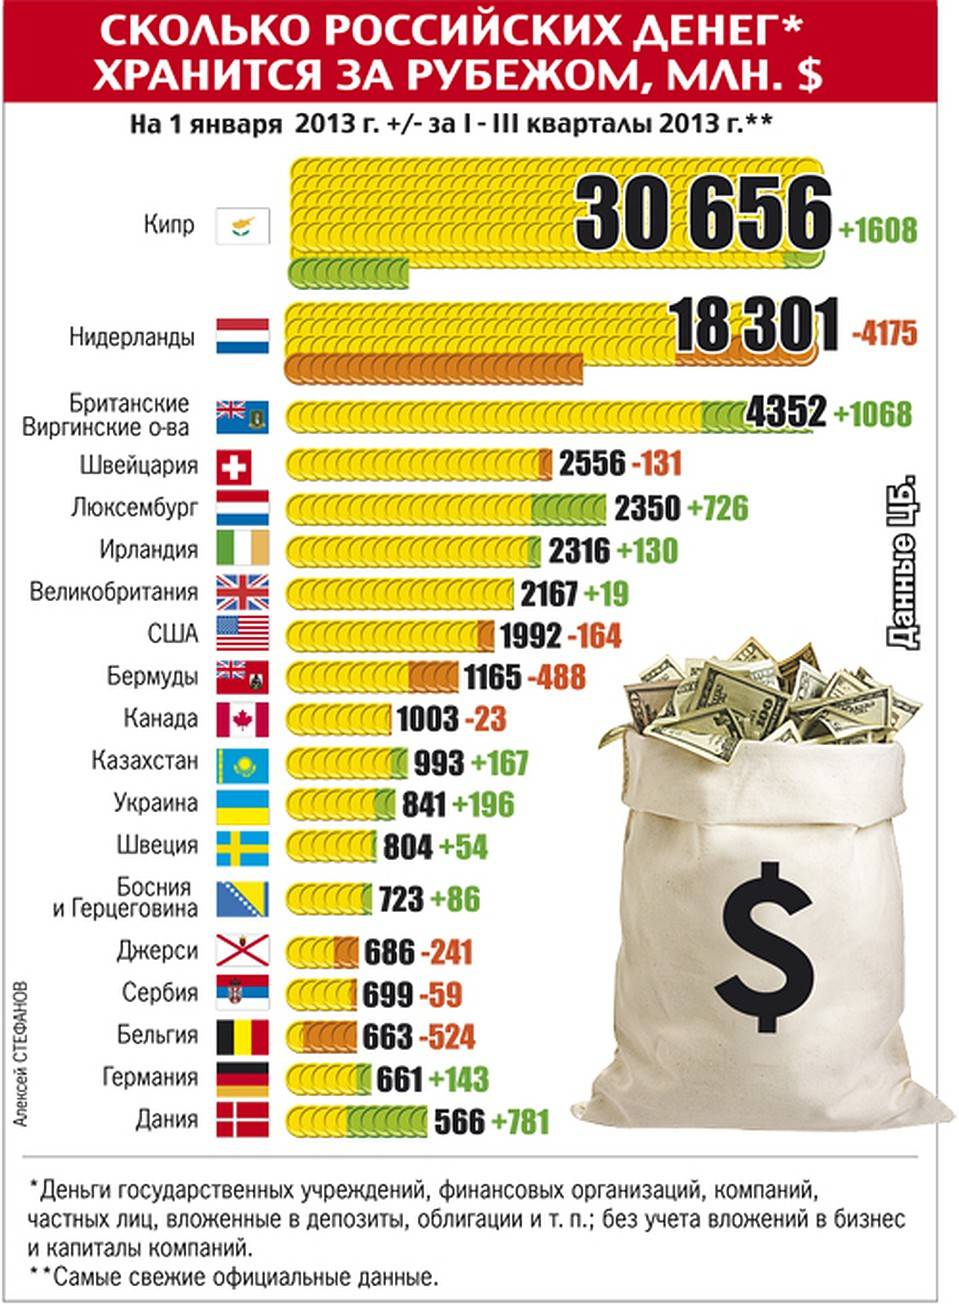 Количество денег в россии. Сколько всего денег в мире. Сколькоьденег в России. Количество денег в странах. Сколько денег в России.